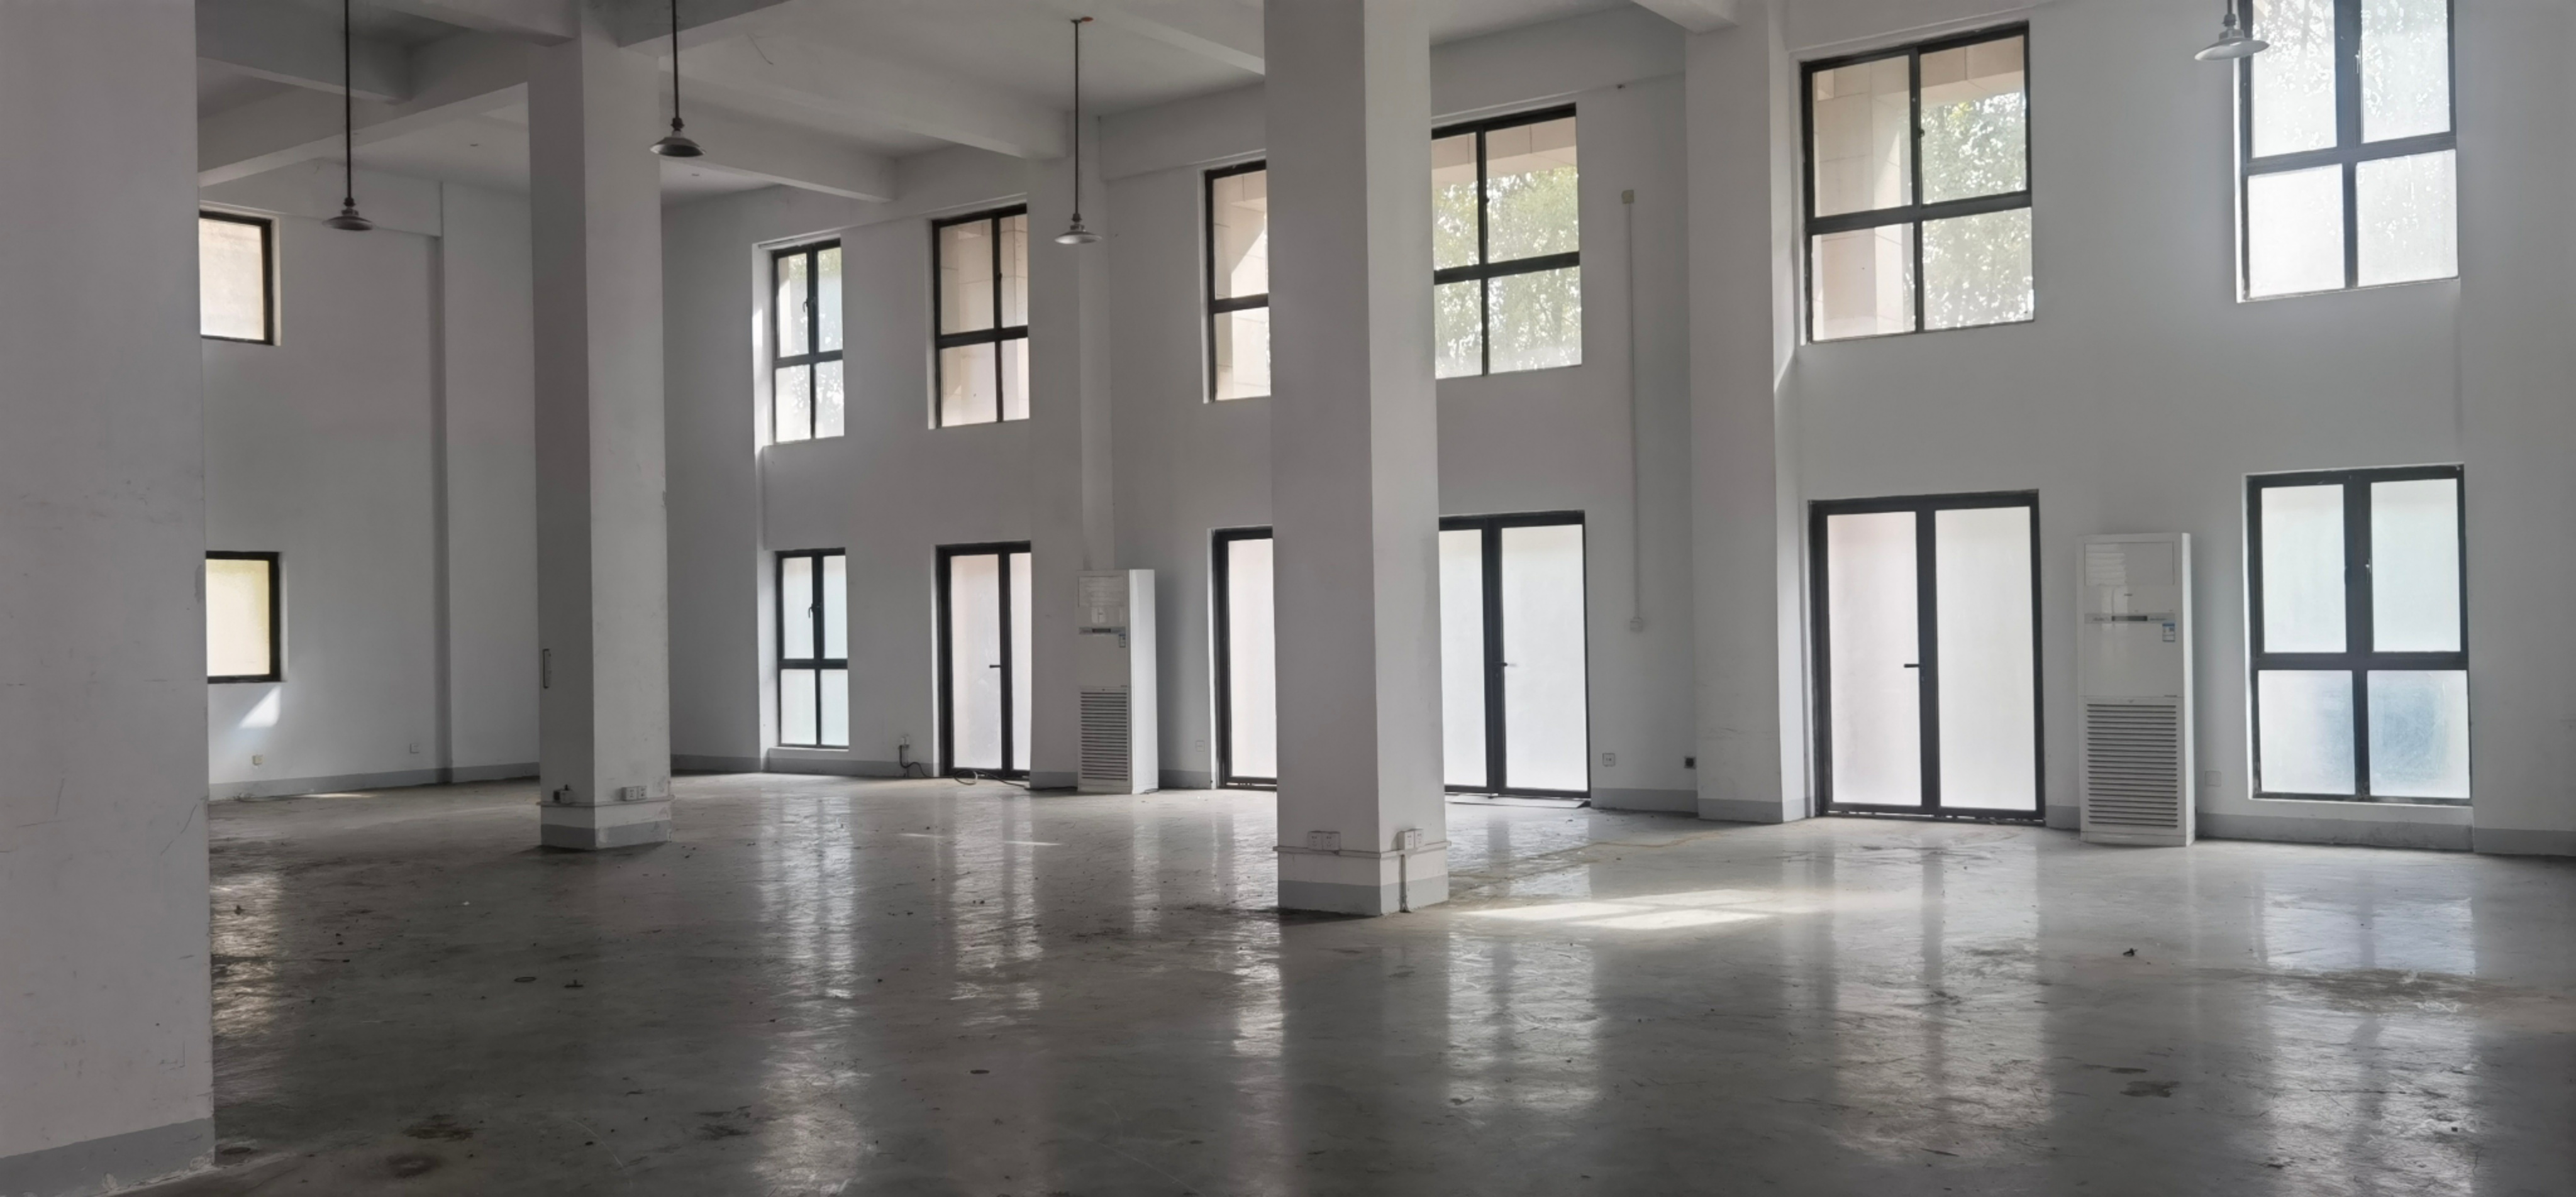 全方位科技园1500平米办公室出租-租金价格2.30元/m²/天